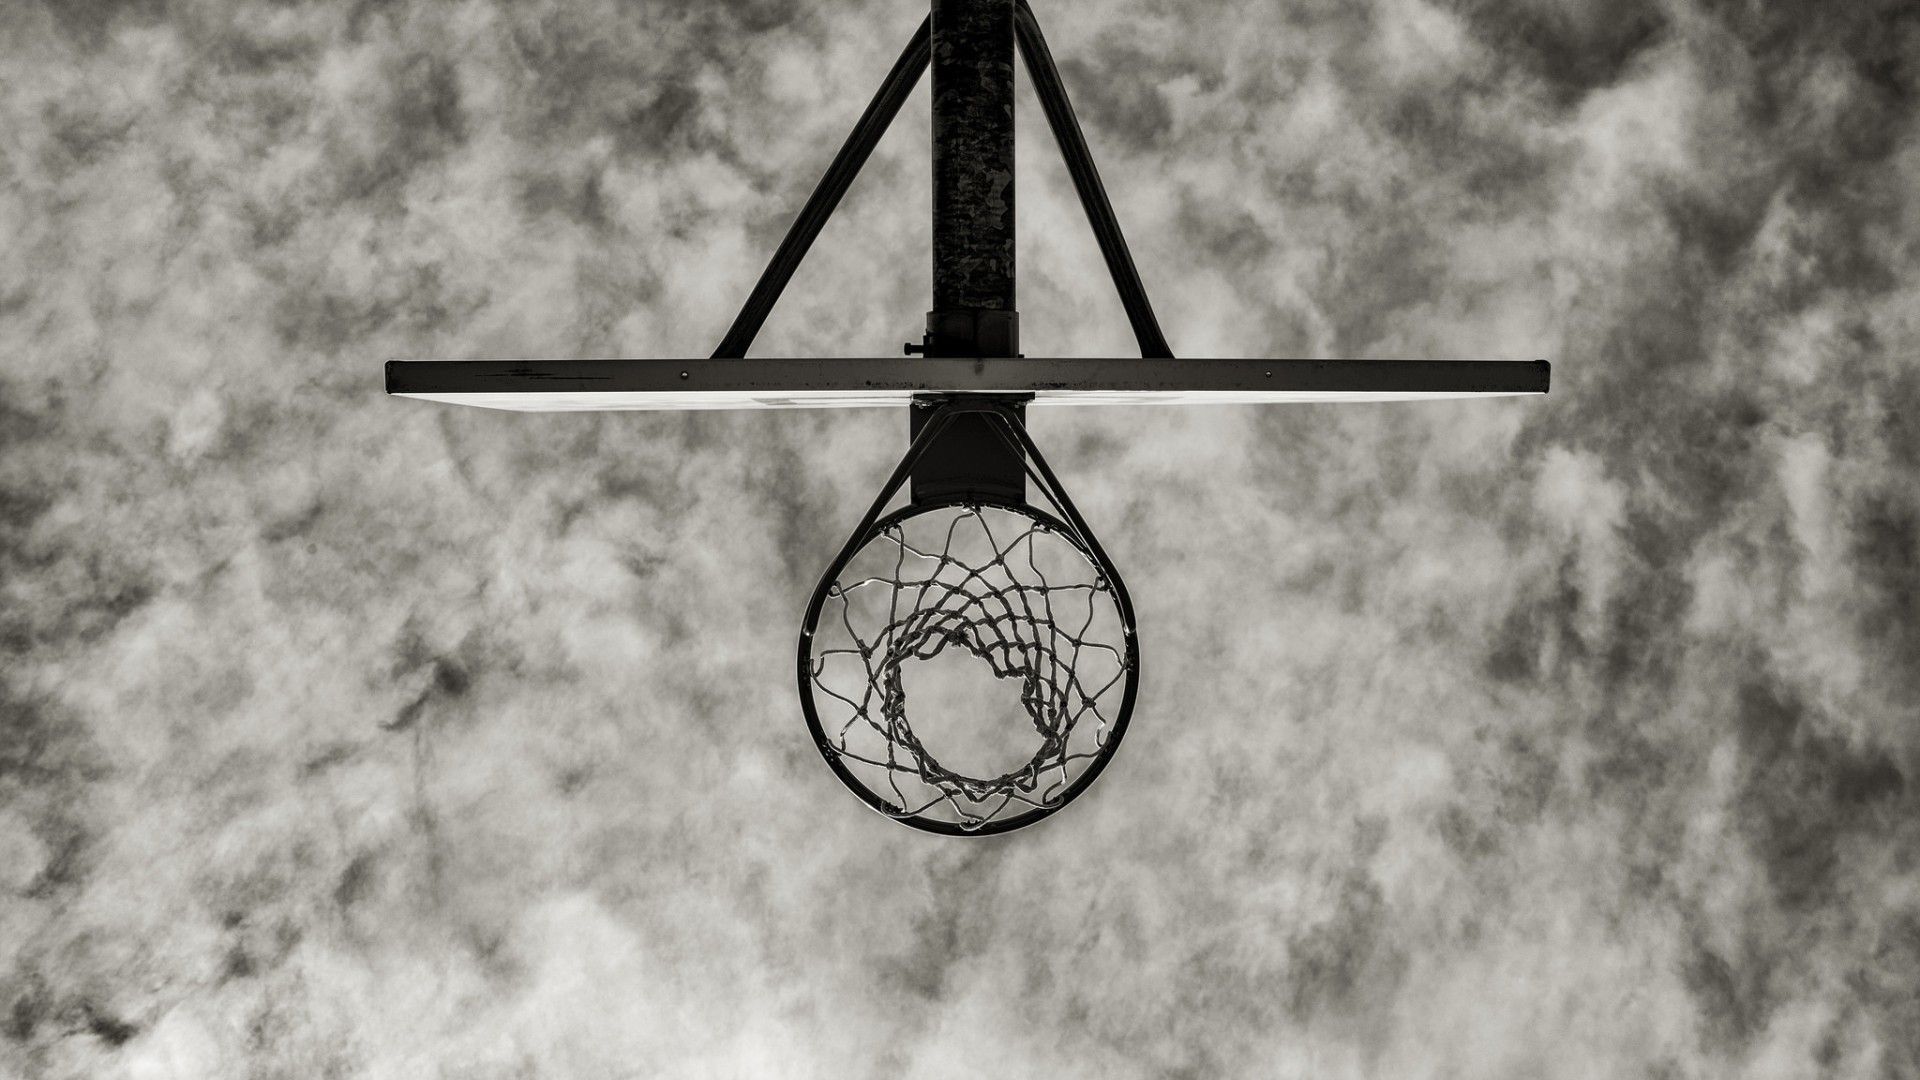 sfondi di basket,bianco e nero,orologio,monocromatico,cielo,fotografia